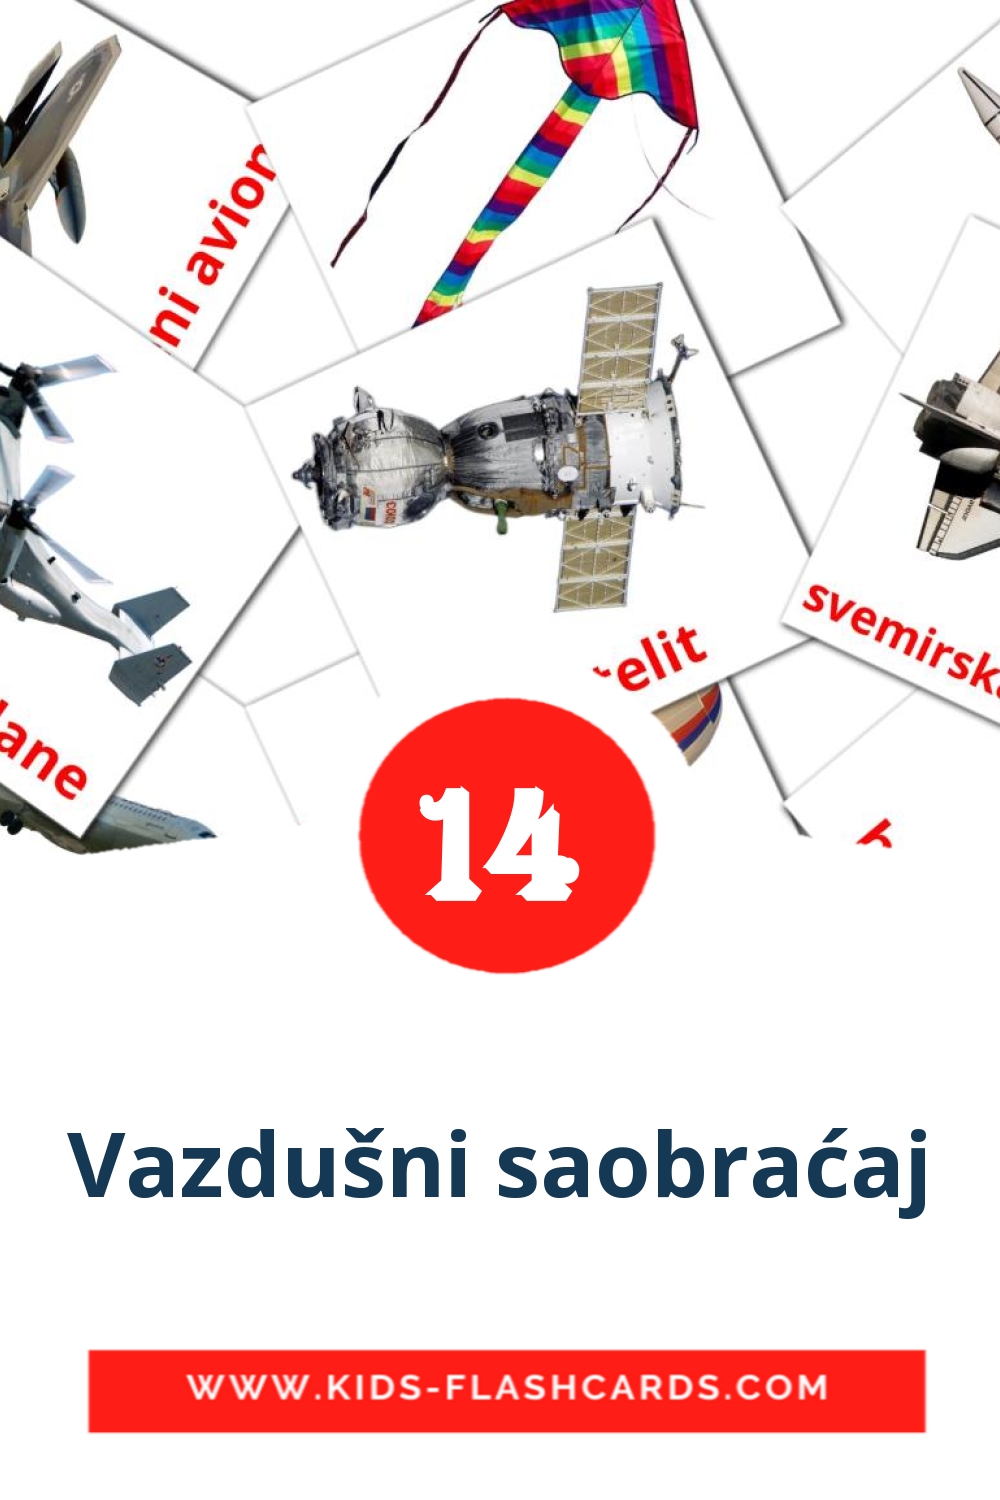 14 Vazdušni saobraćaj Bildkarten für den Kindergarten auf Serbisch